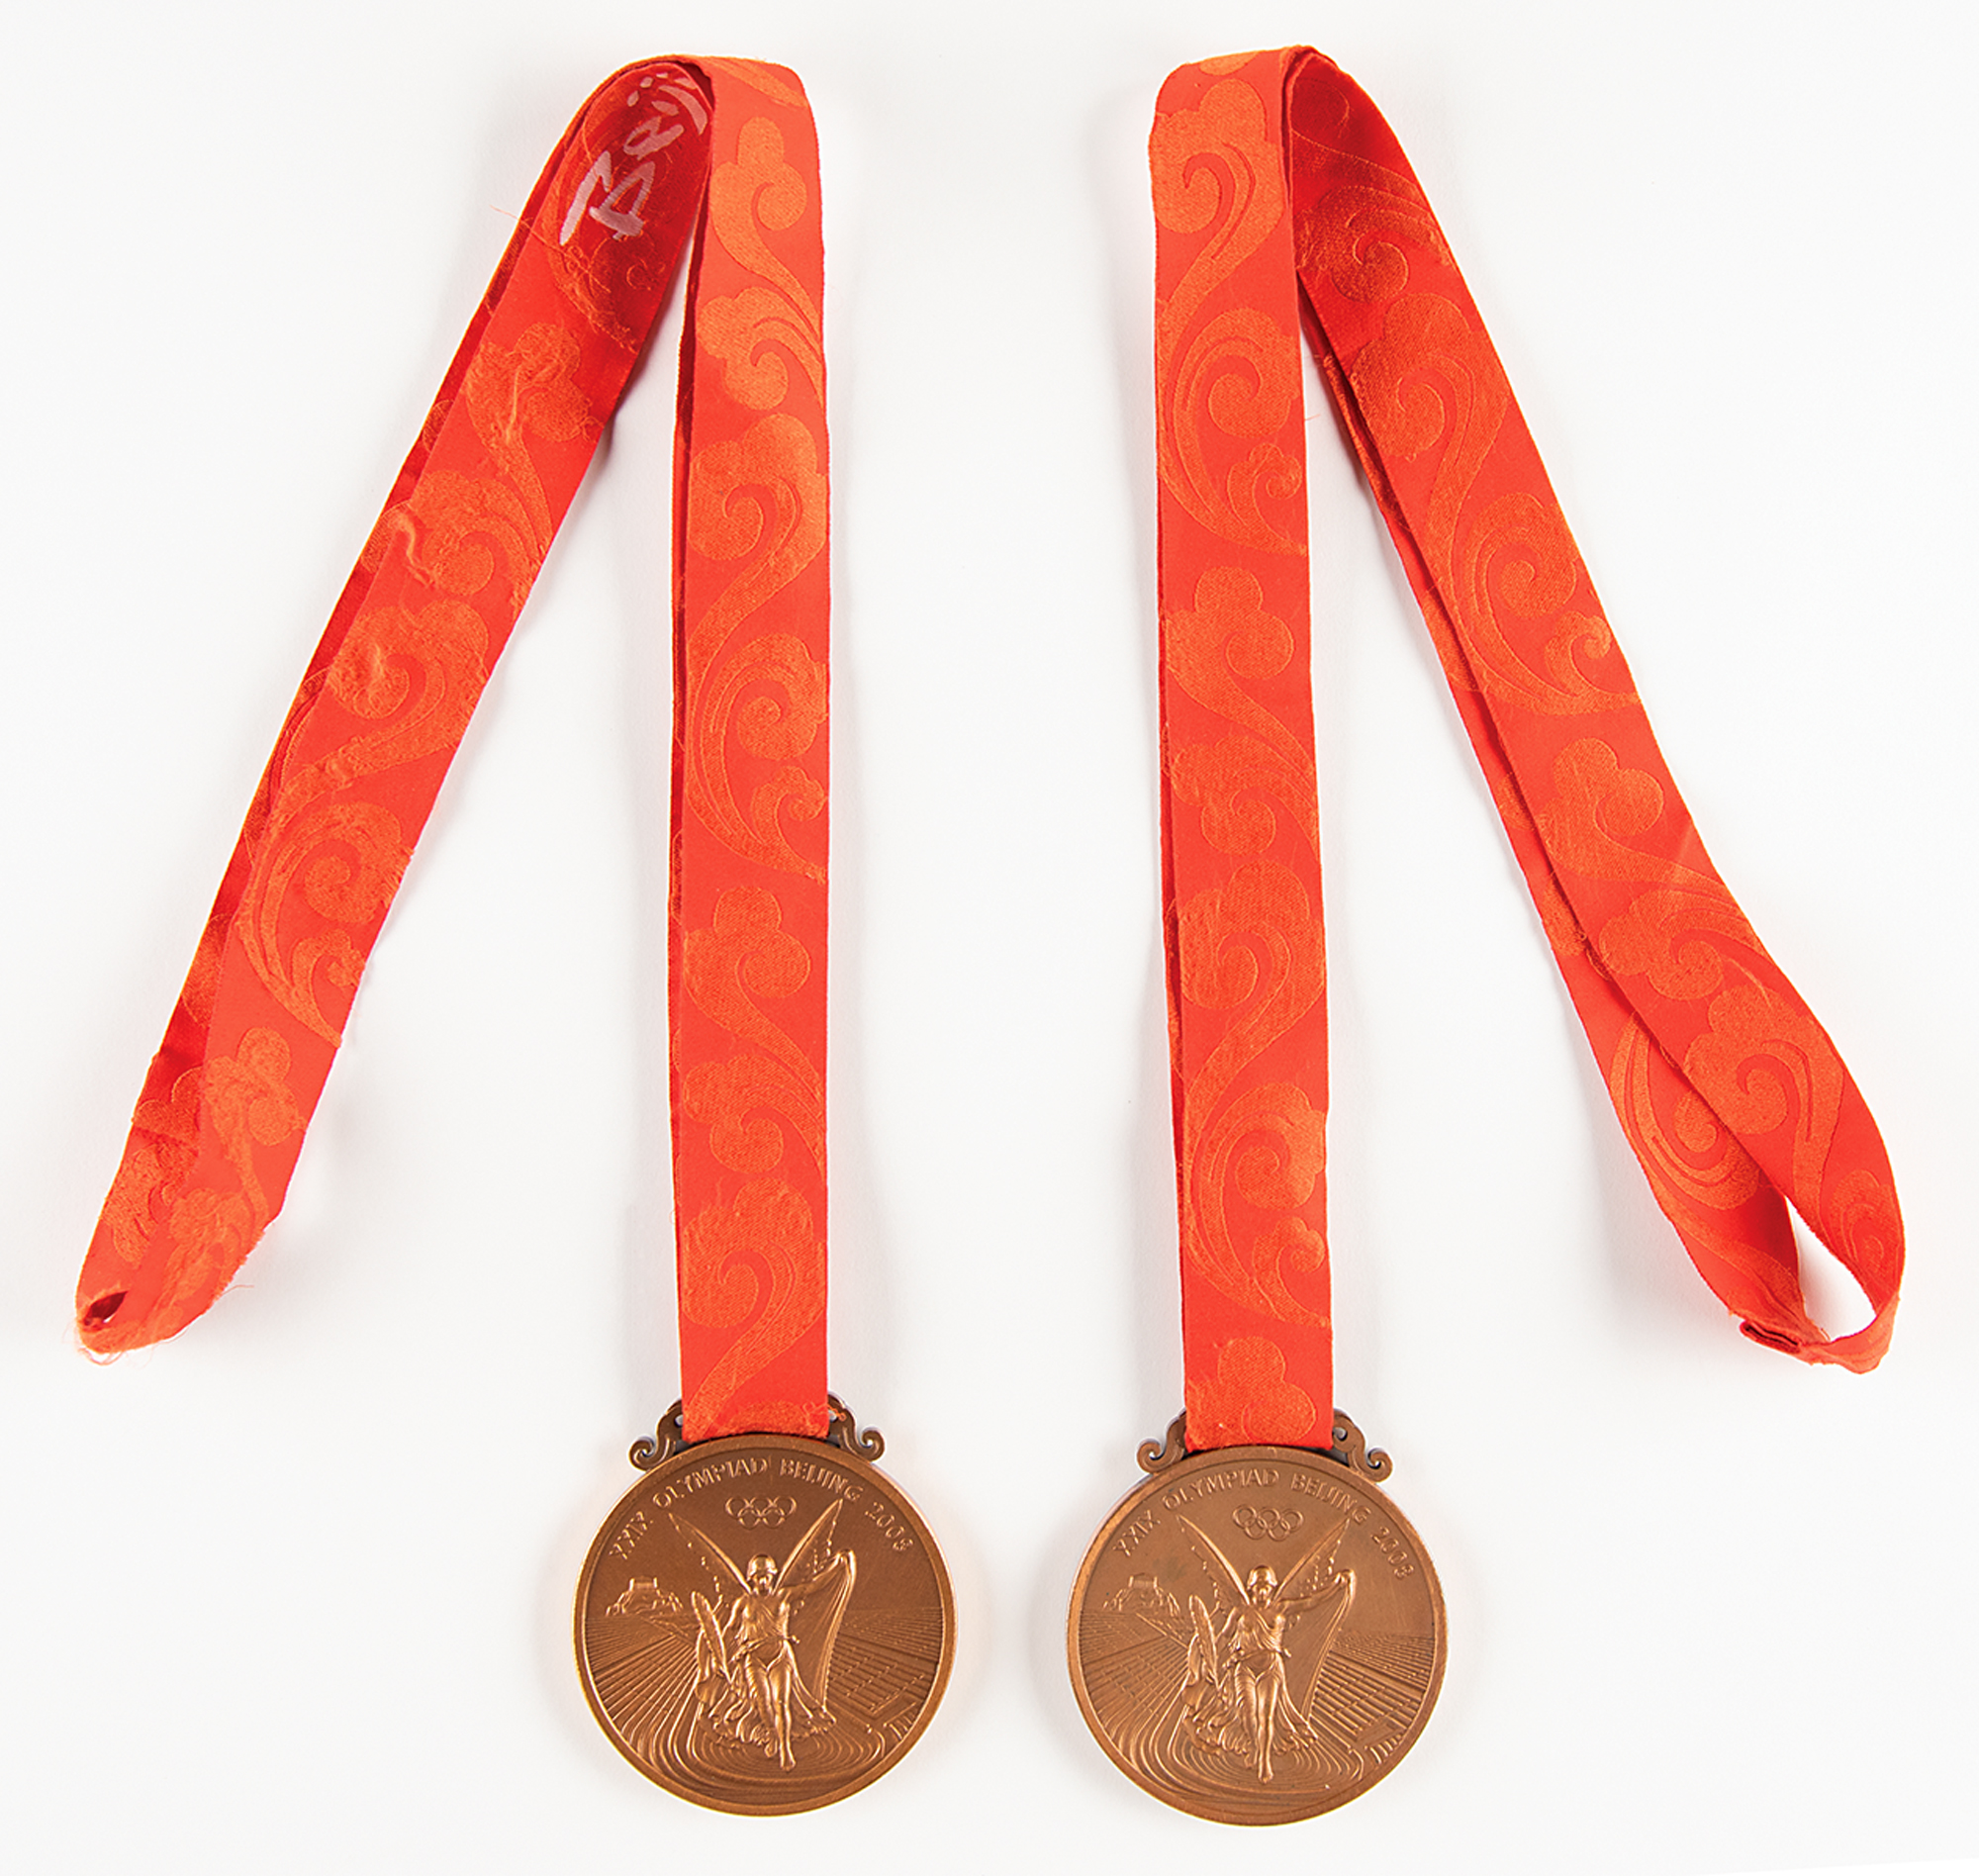 Lot #4038 Ryan Lochte's Beijing 2008 Summer Olympics (2) Bronze Winner's Medals